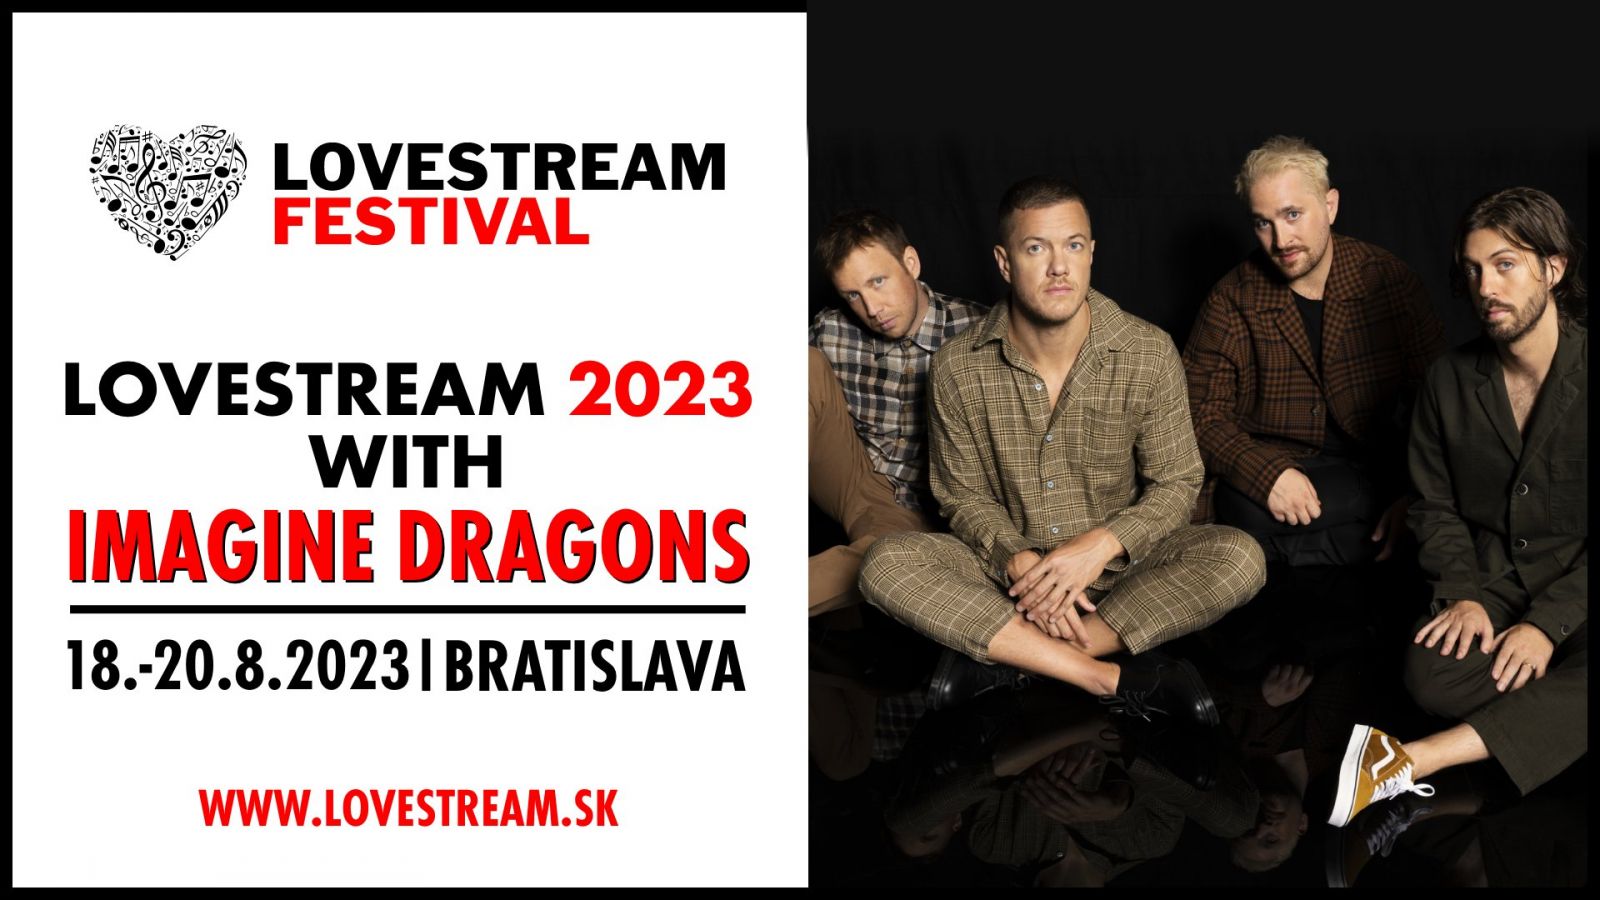 Na Lovestream festival Bratislava v roku 2023 prídu IMAGINE DRAGONS